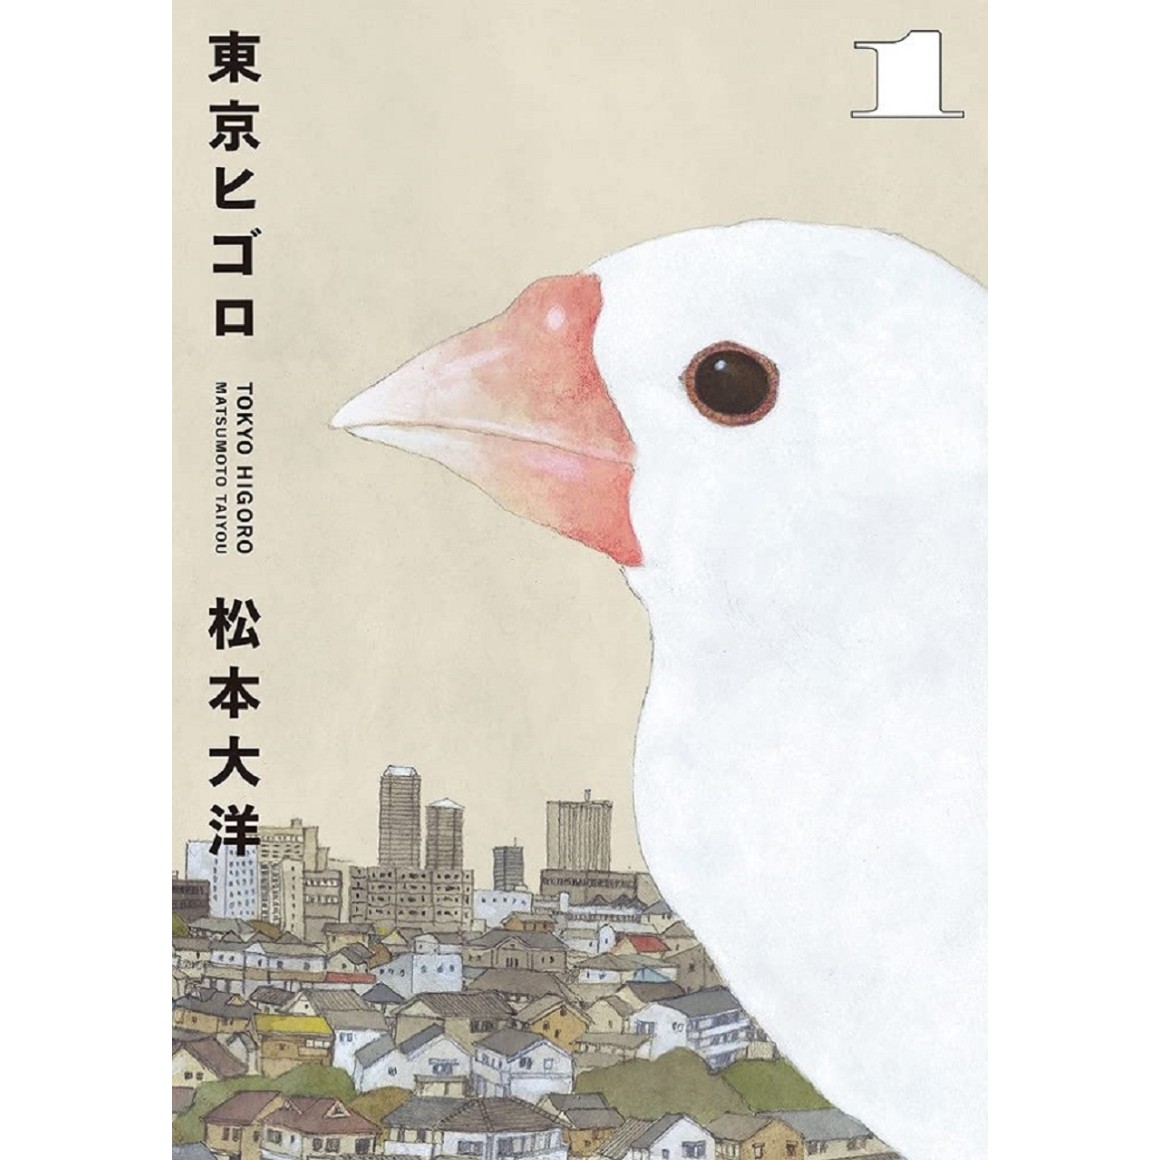 Tokyo Revengers - Letter from Keisuke Baji Vol.1 - ISBN:9784065293782